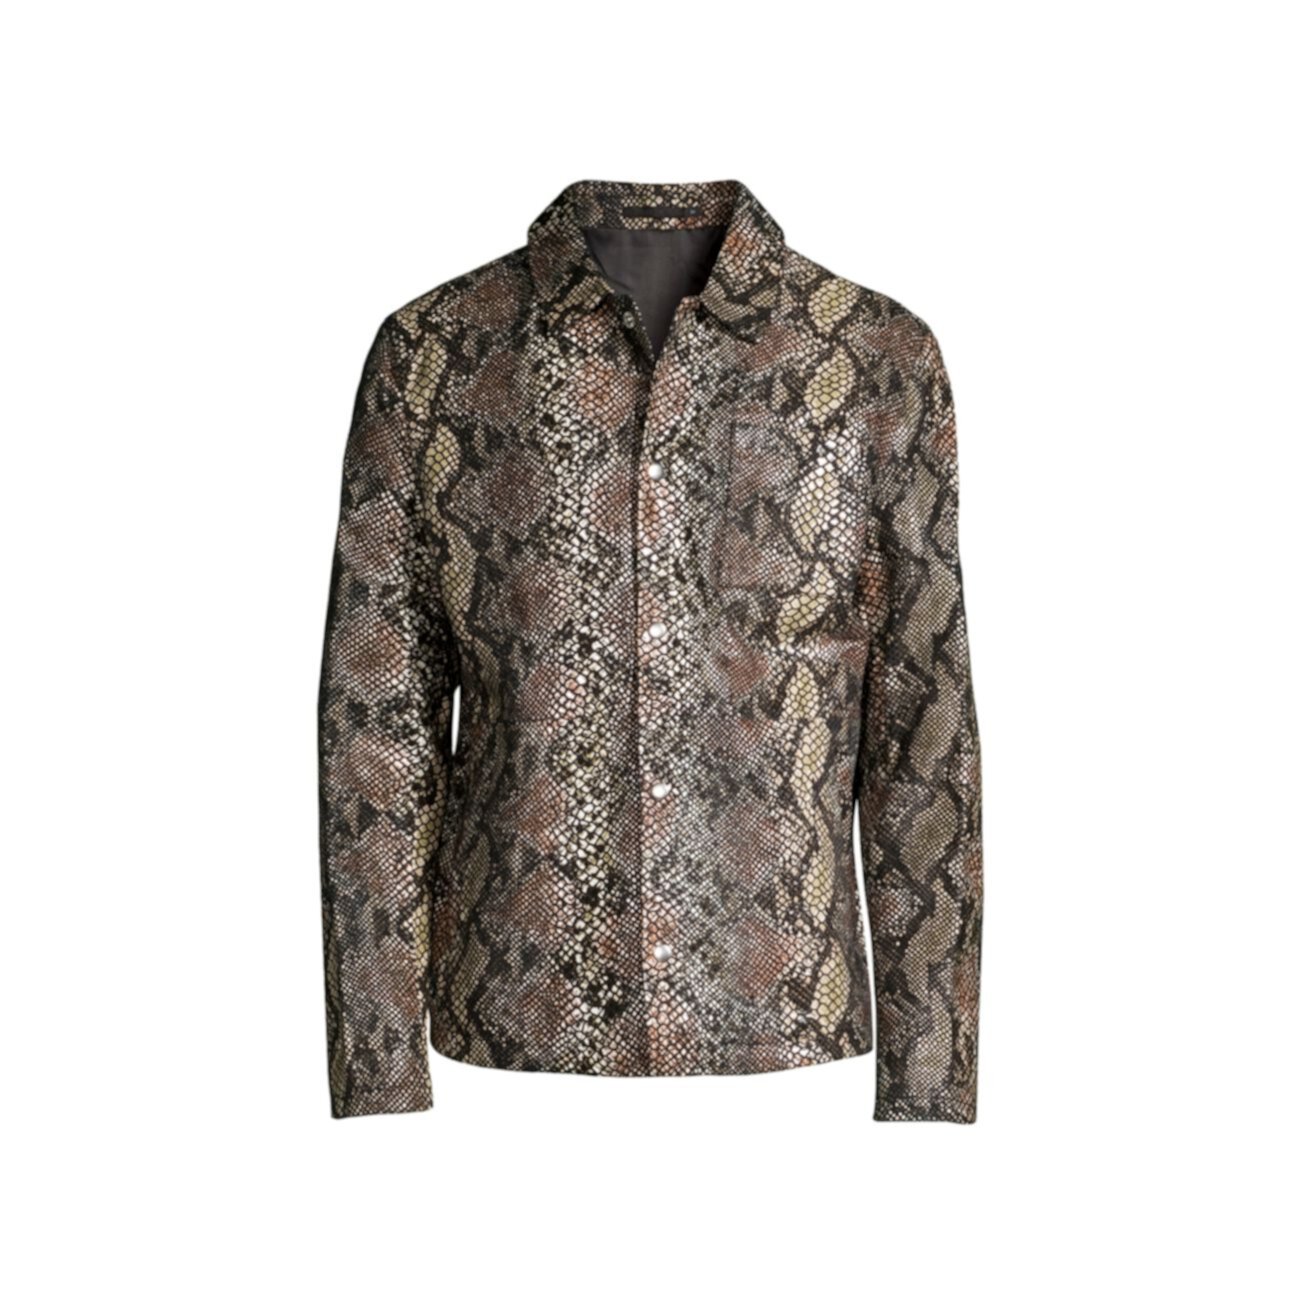 Кожаная куртка со змеиным принтом BLK DNM